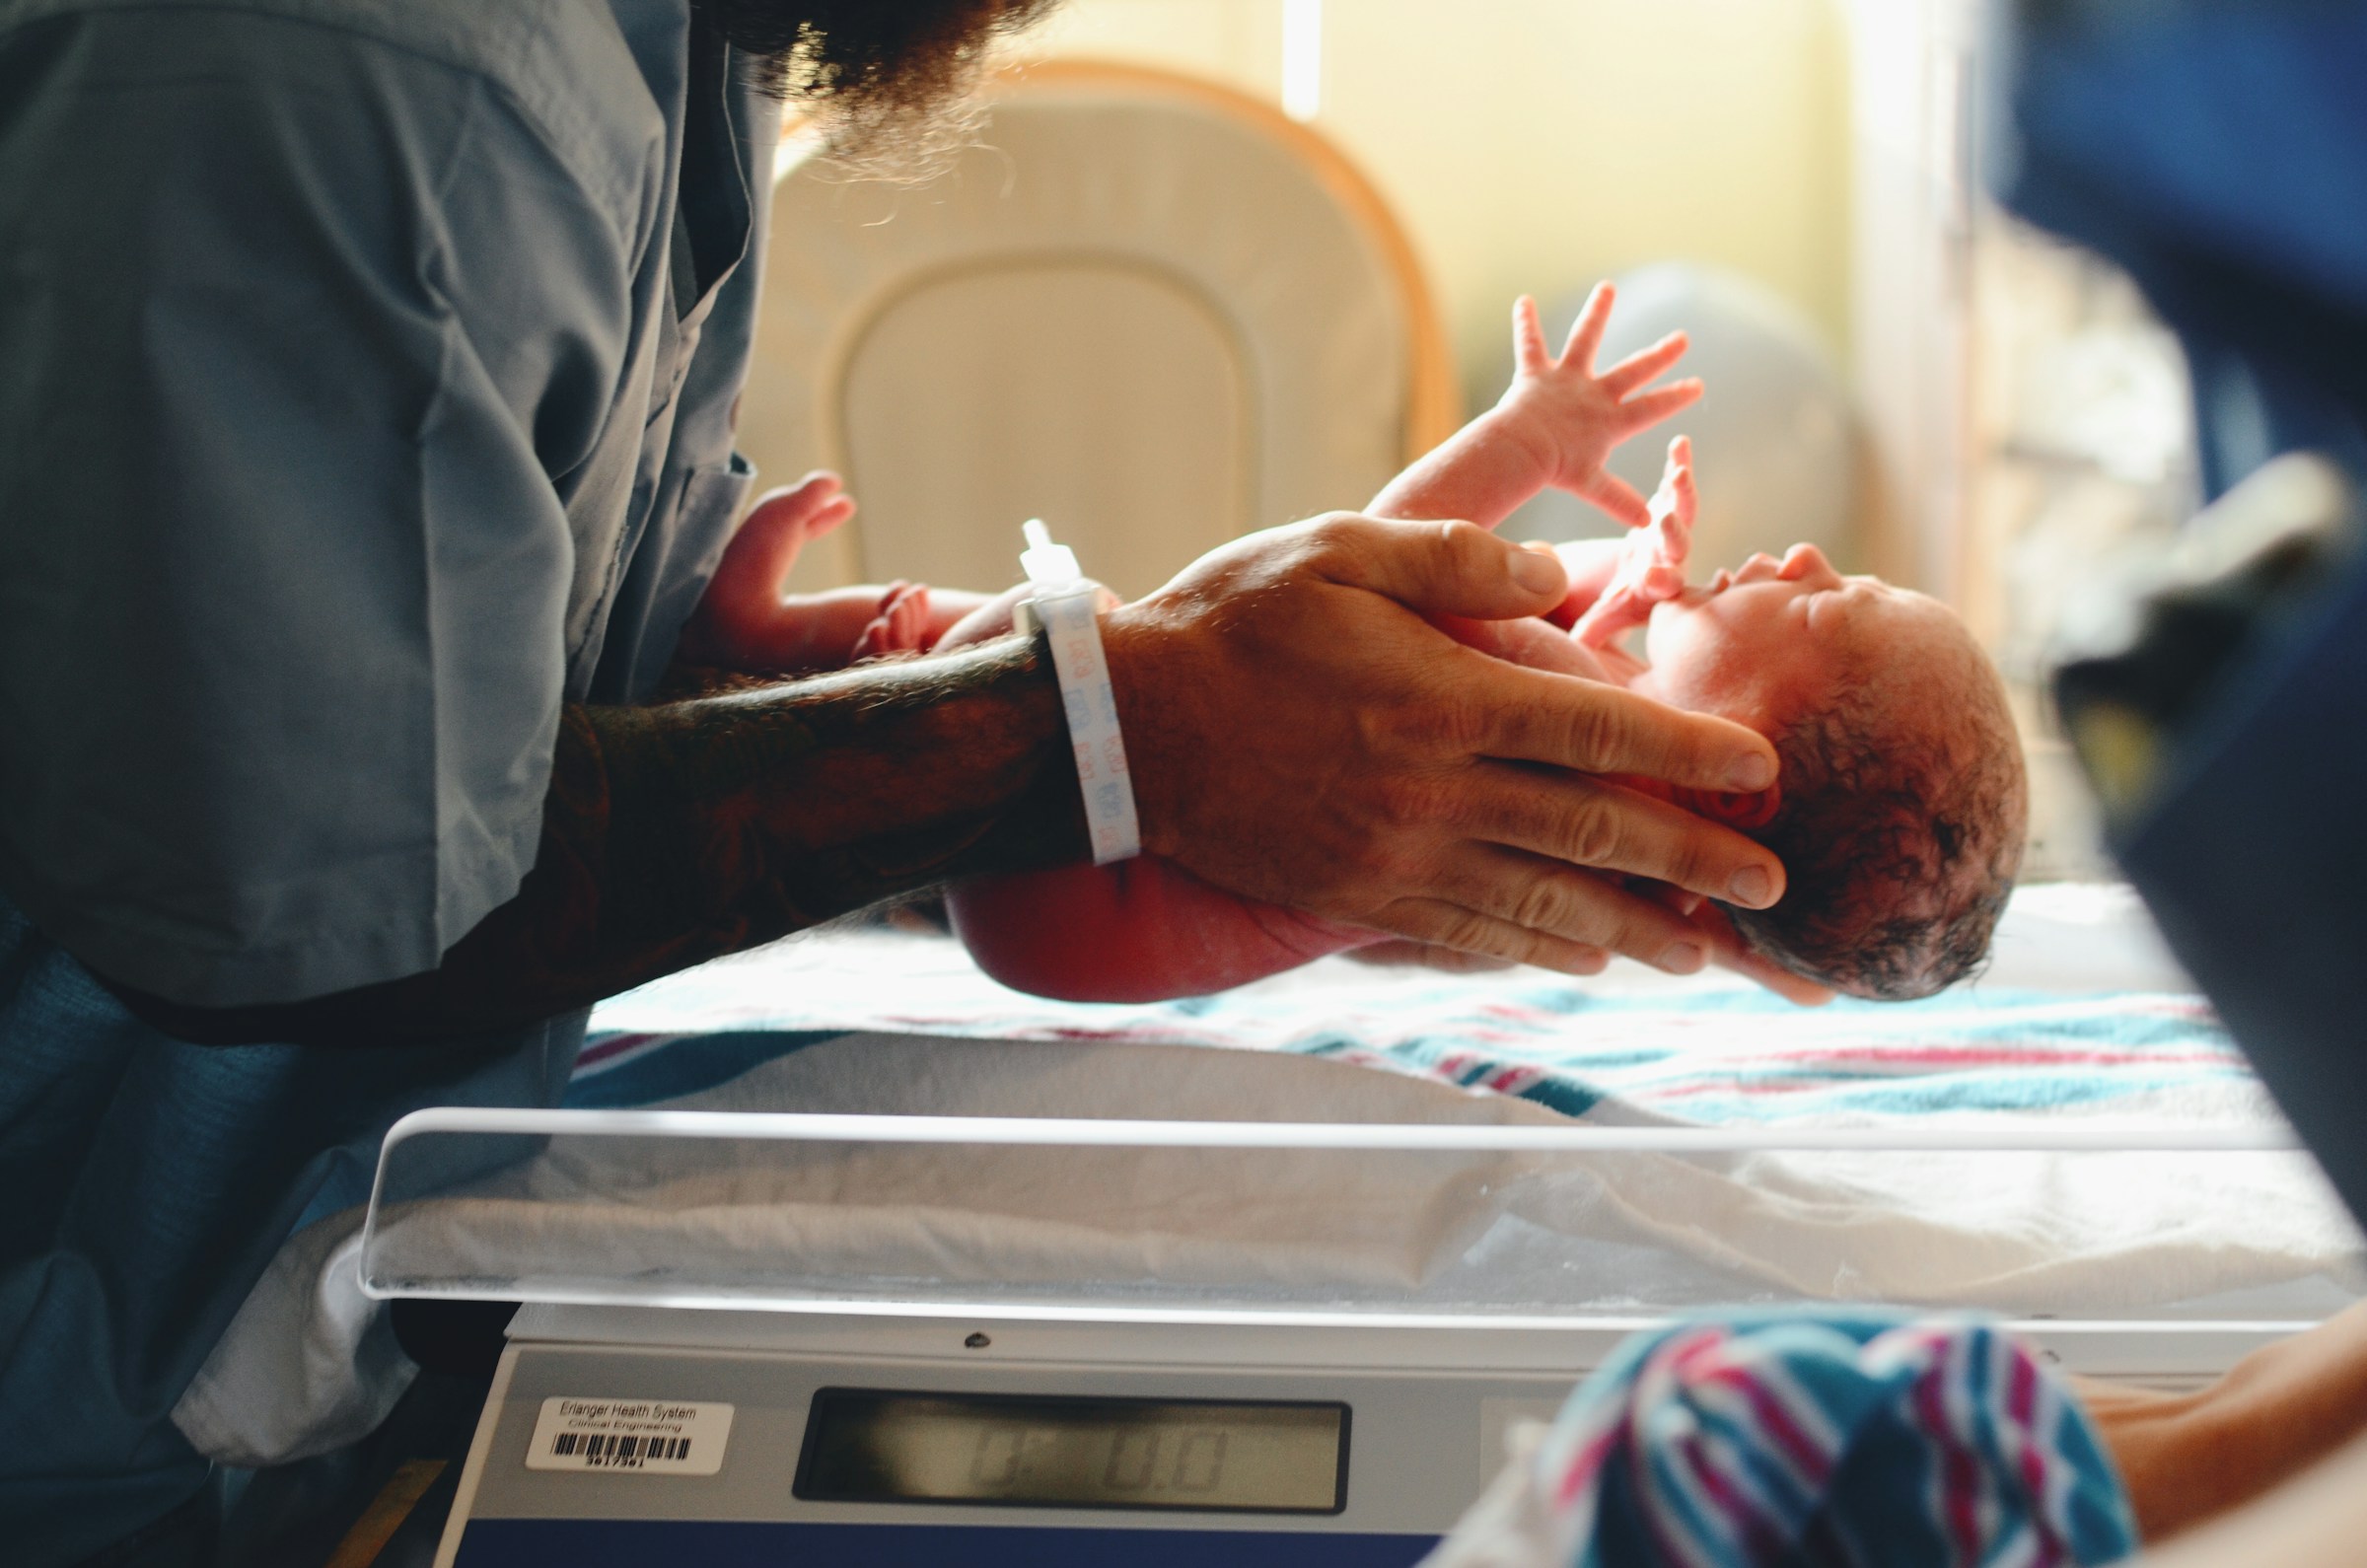 Newborn baby in hospital | Source: Unsplash